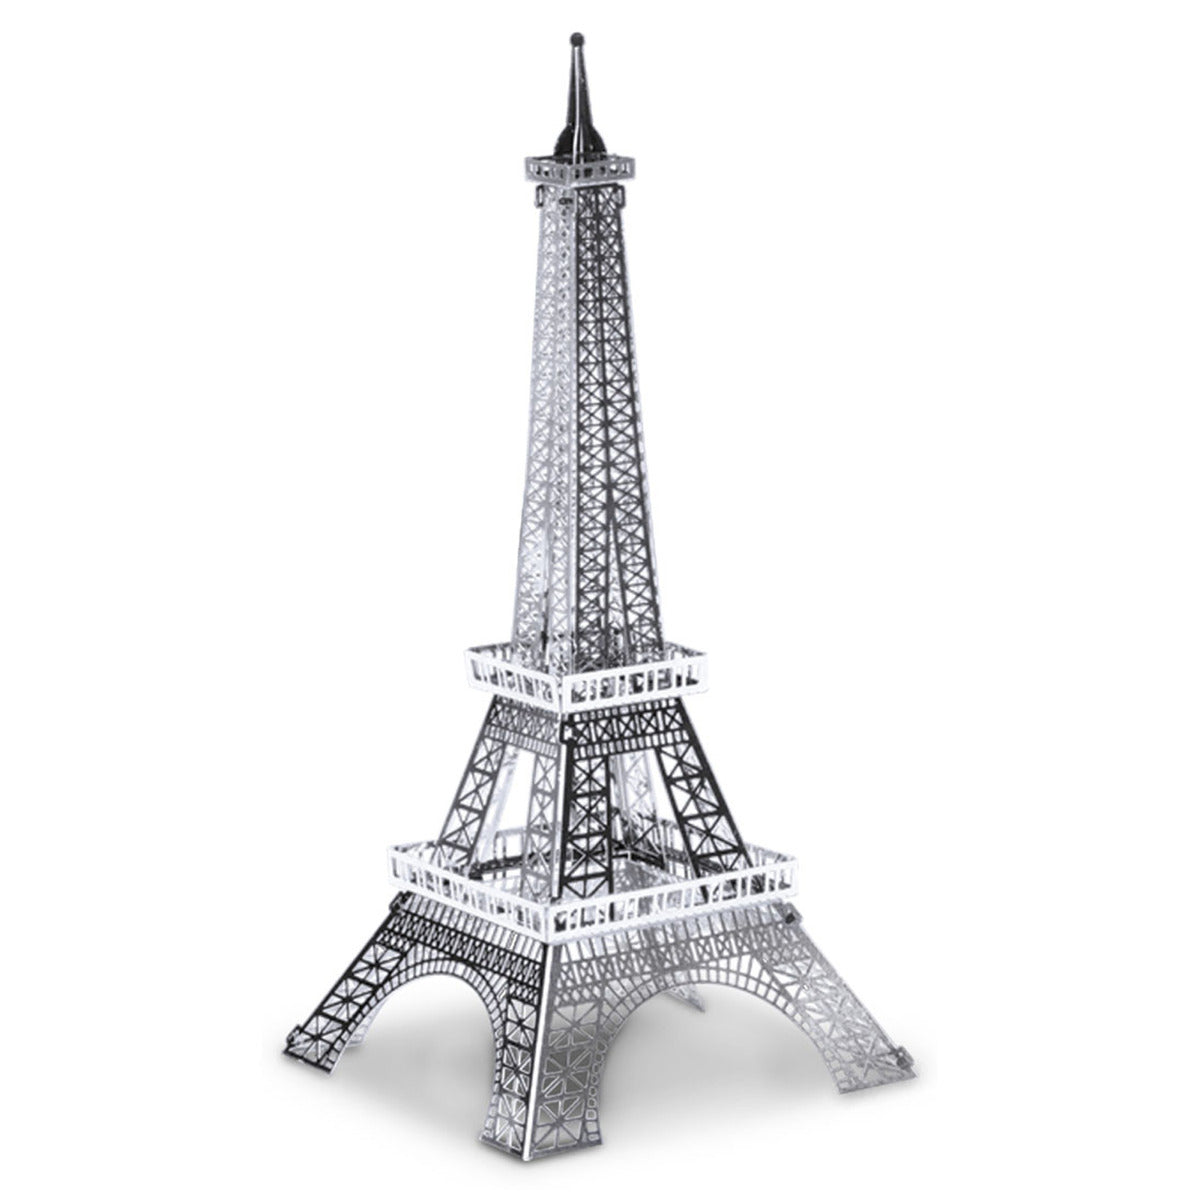 Metal Earth Metallbausätze MMS016 Eiffelturm Eisenfachwerkturm Metall Modell